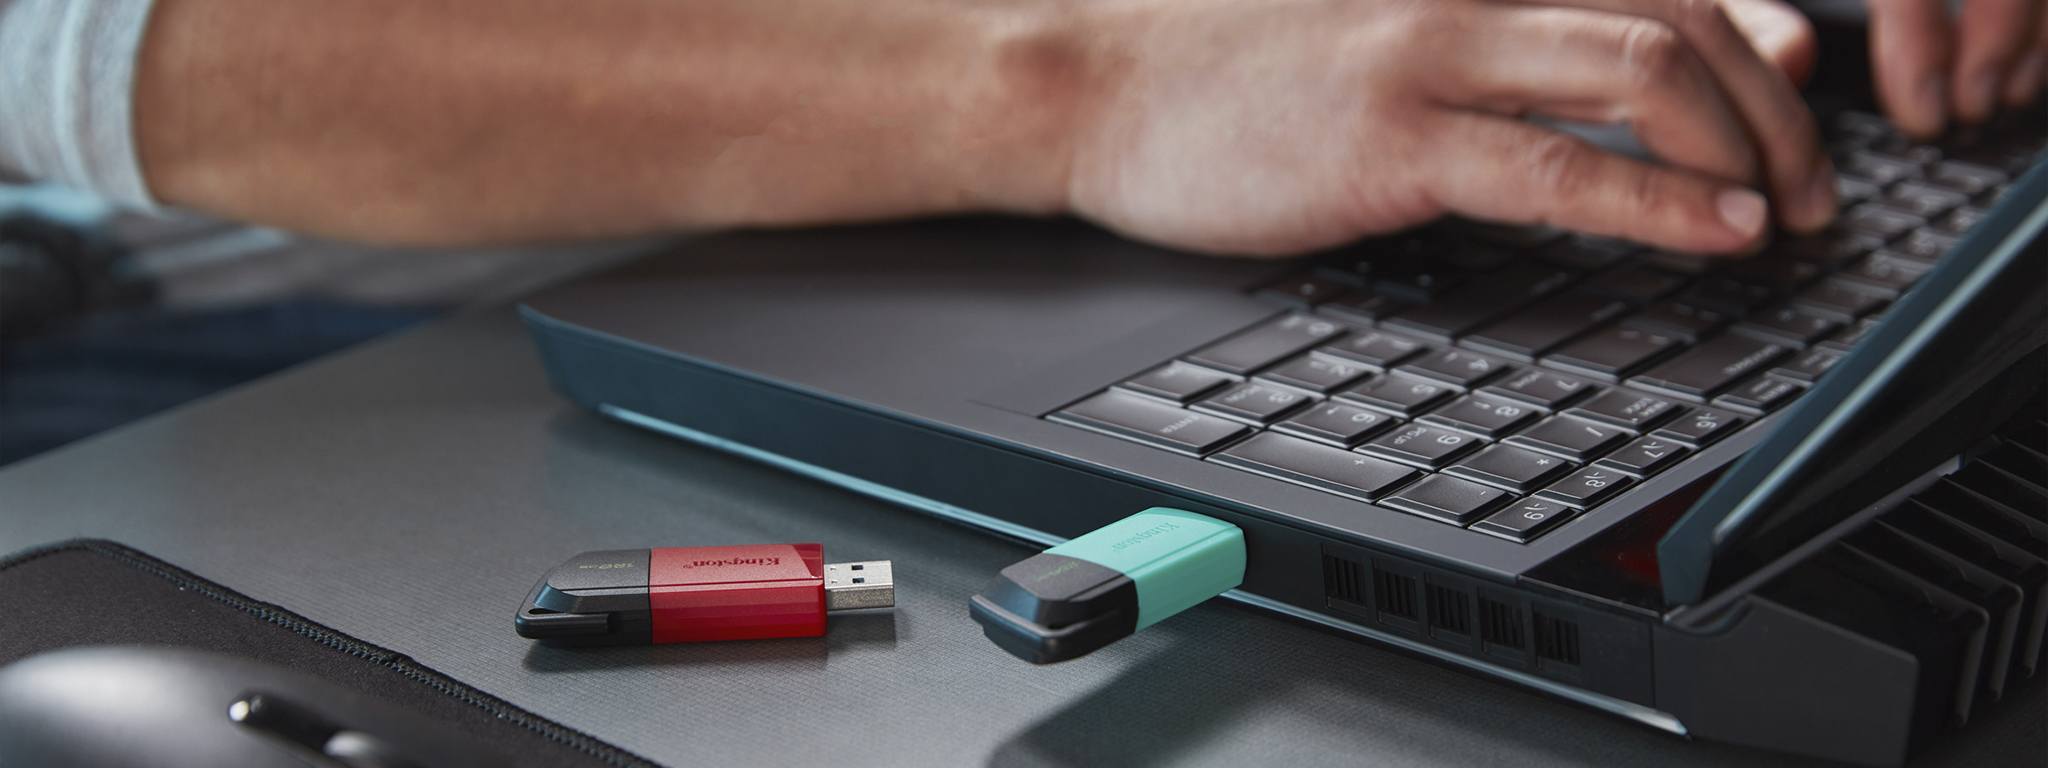 DT Exodia M แฟลชไดรฟ์ USB สองชิ้น (ชิ้นหนึ่งมีฝาสีเขียว ส่วนอีกชิ้นมีฝาสีแดง) วางอยู่ที่ขอบโต๊ะ โดยมีคนกำลังใช้โน้ตบุ๊กอยู่ด้านหลัง